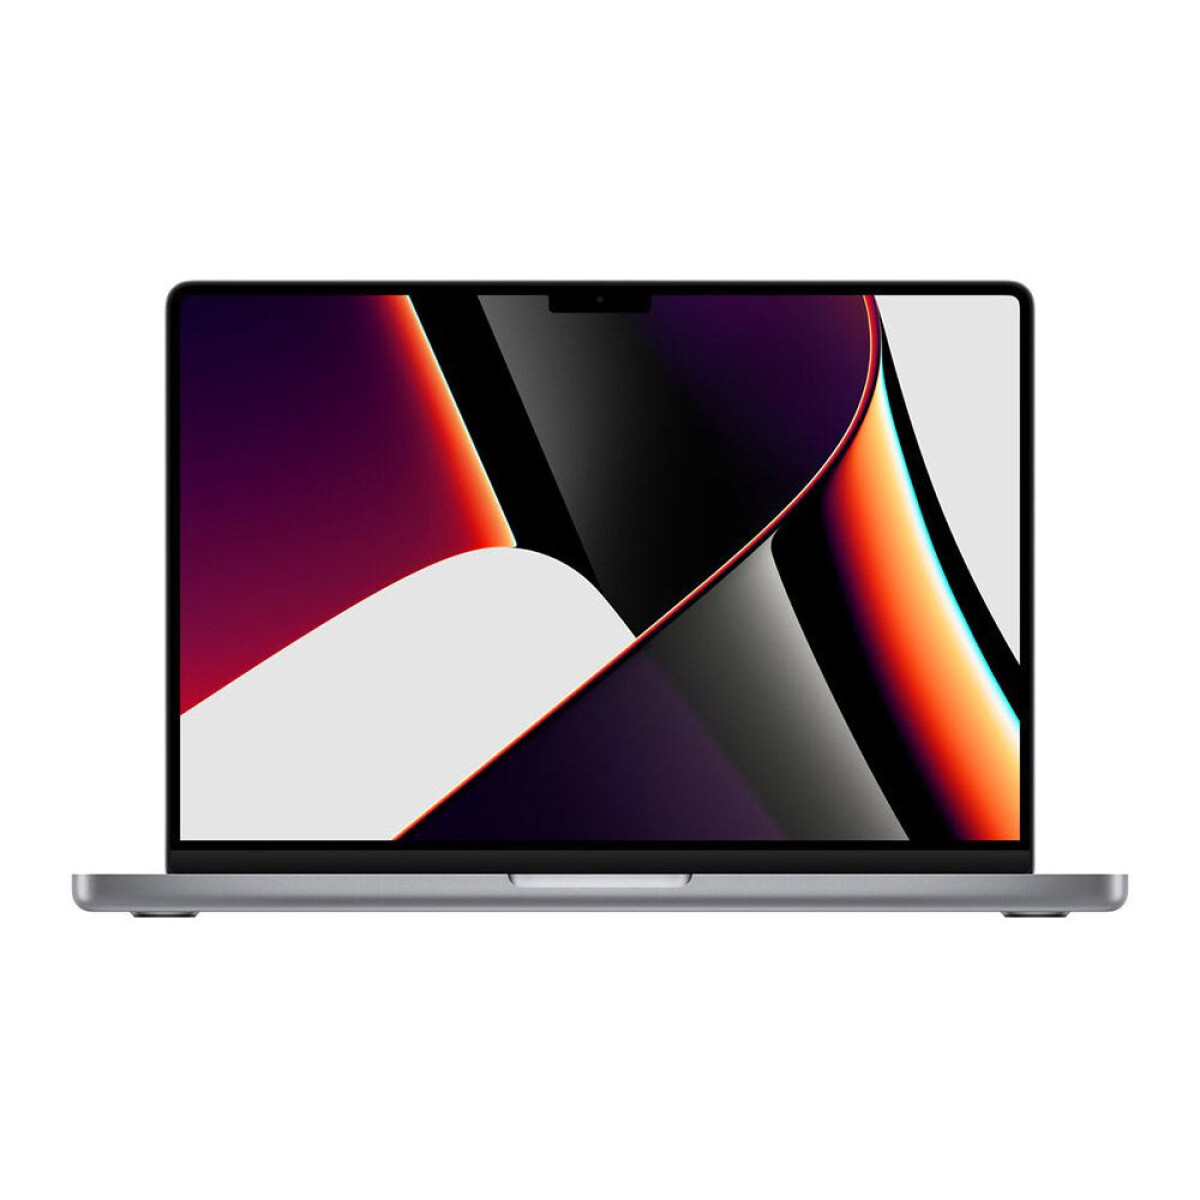 Macbook pro m1 pro 14.2' 1tb / 16gb ram 2021 - Space gray 